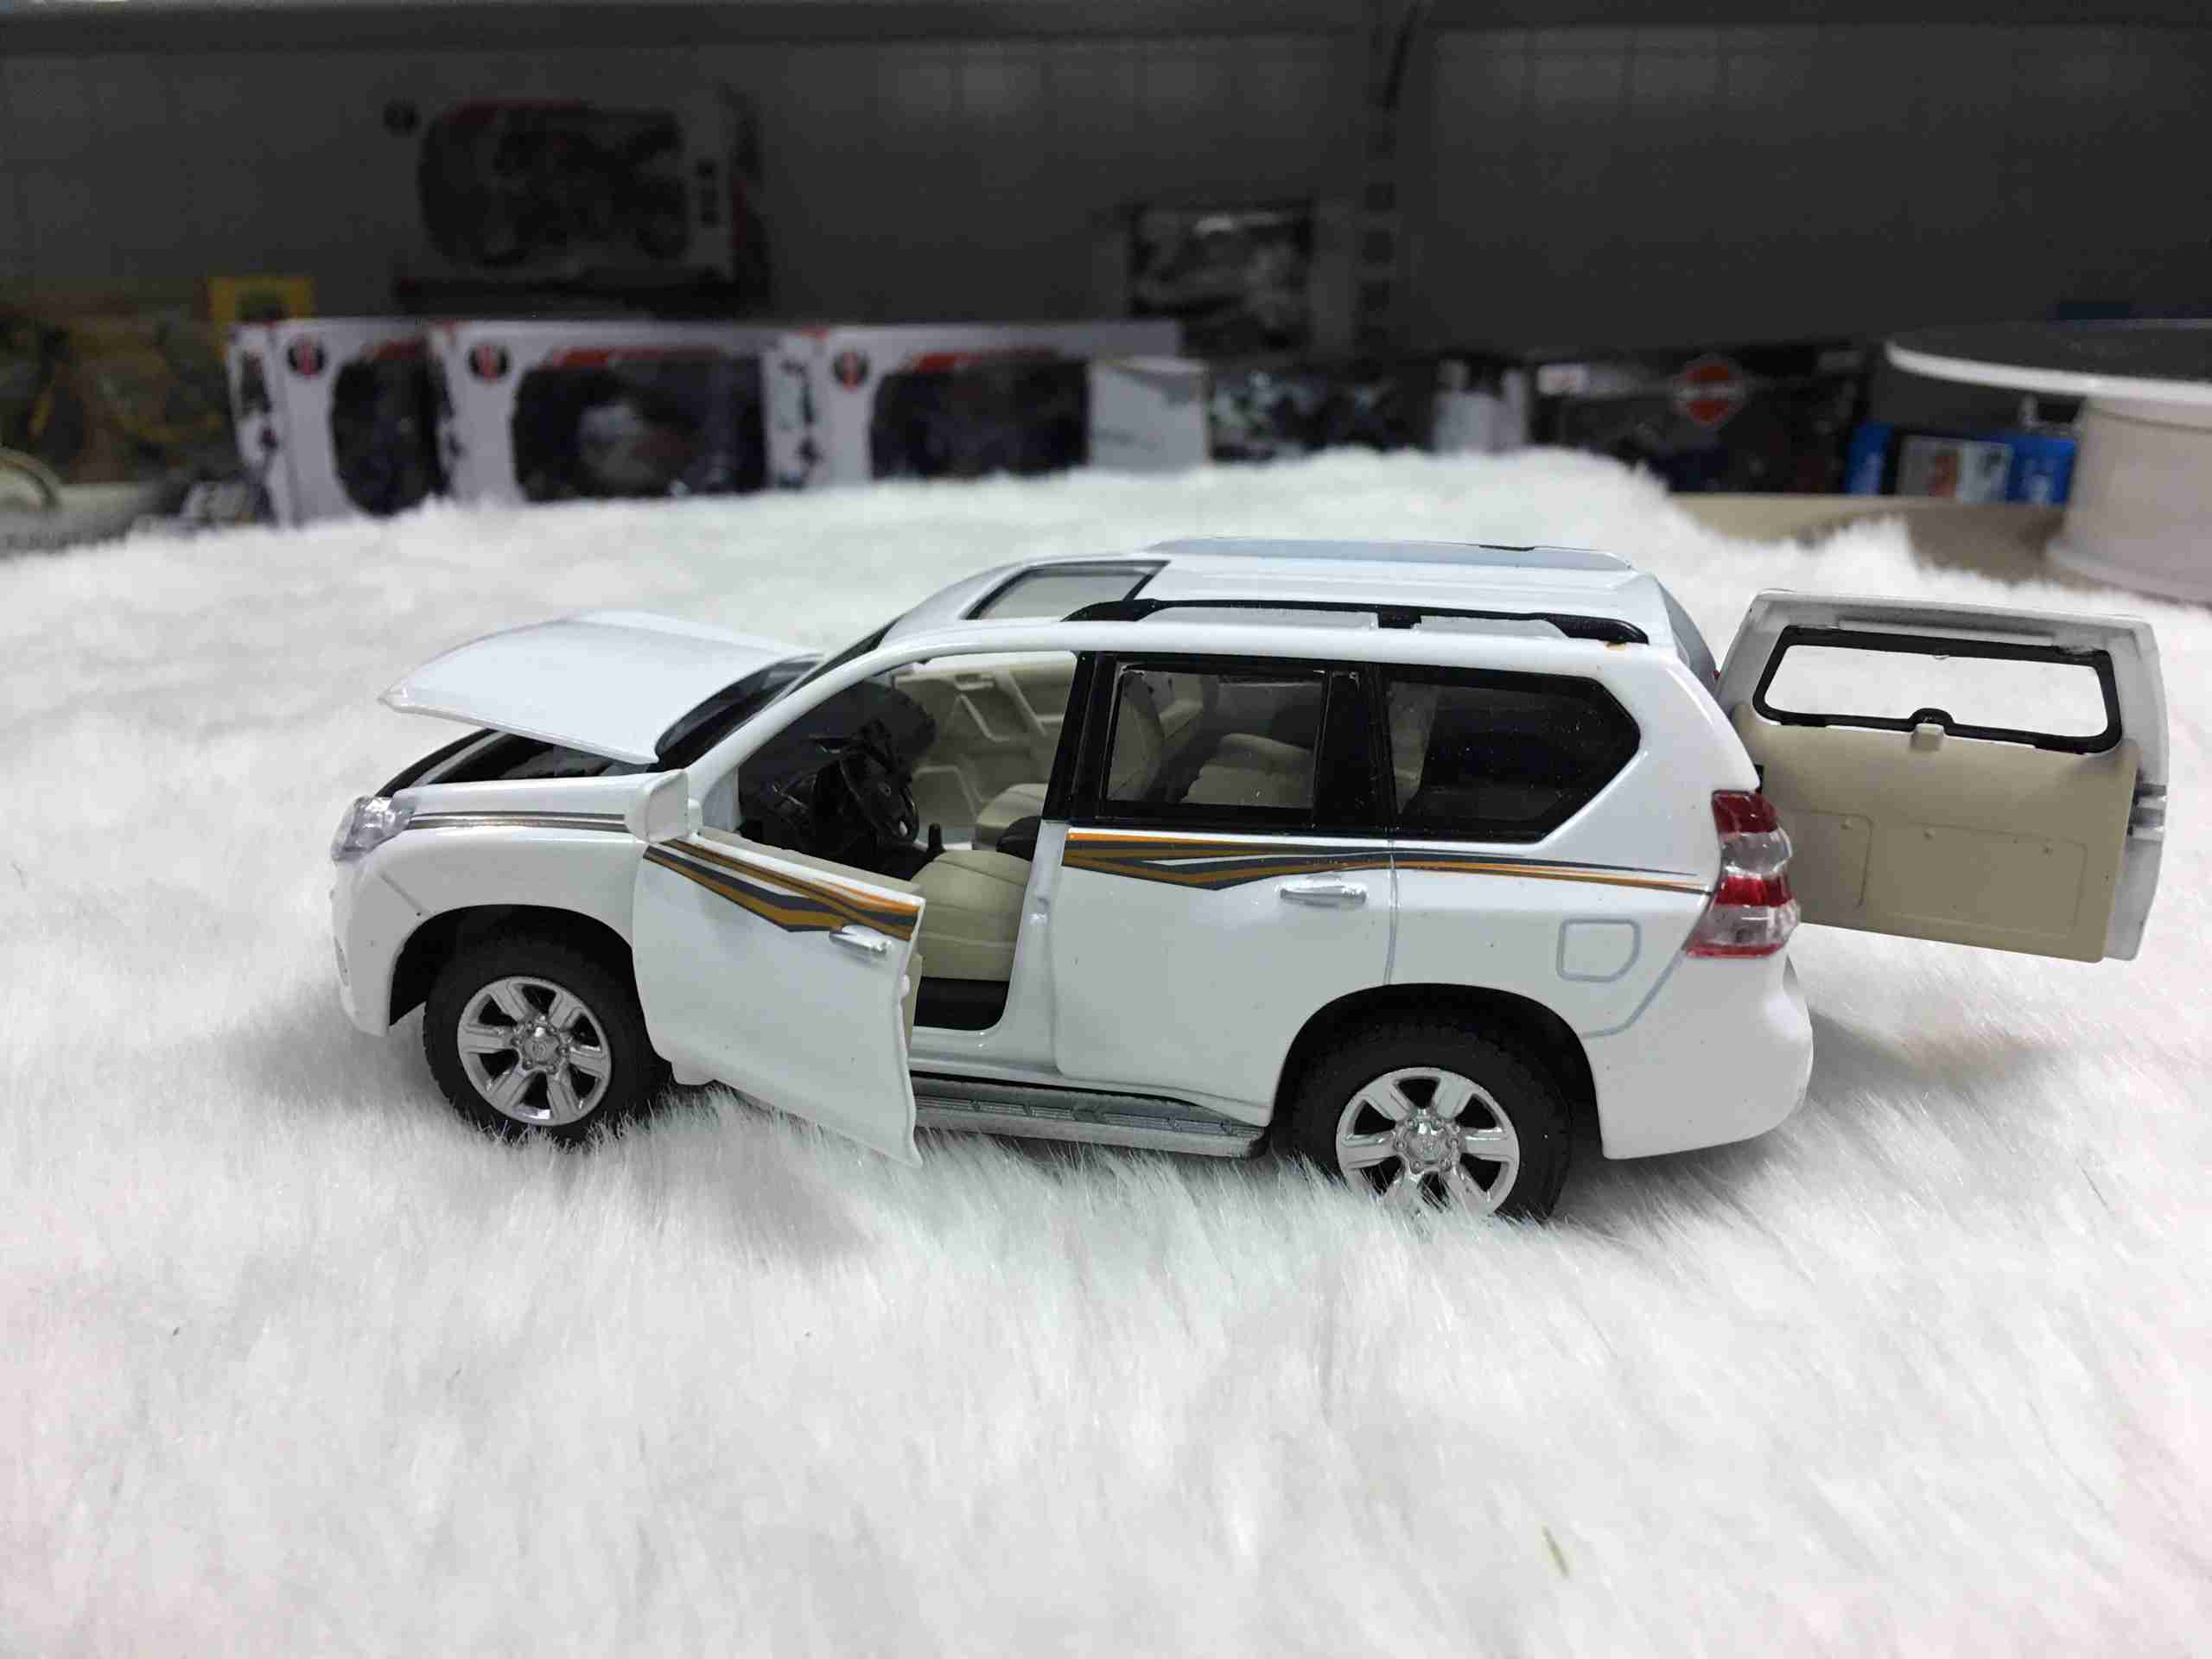 SP004251 - [Shenghui] Toyota Prado 865 boxed 132[White] SP004251